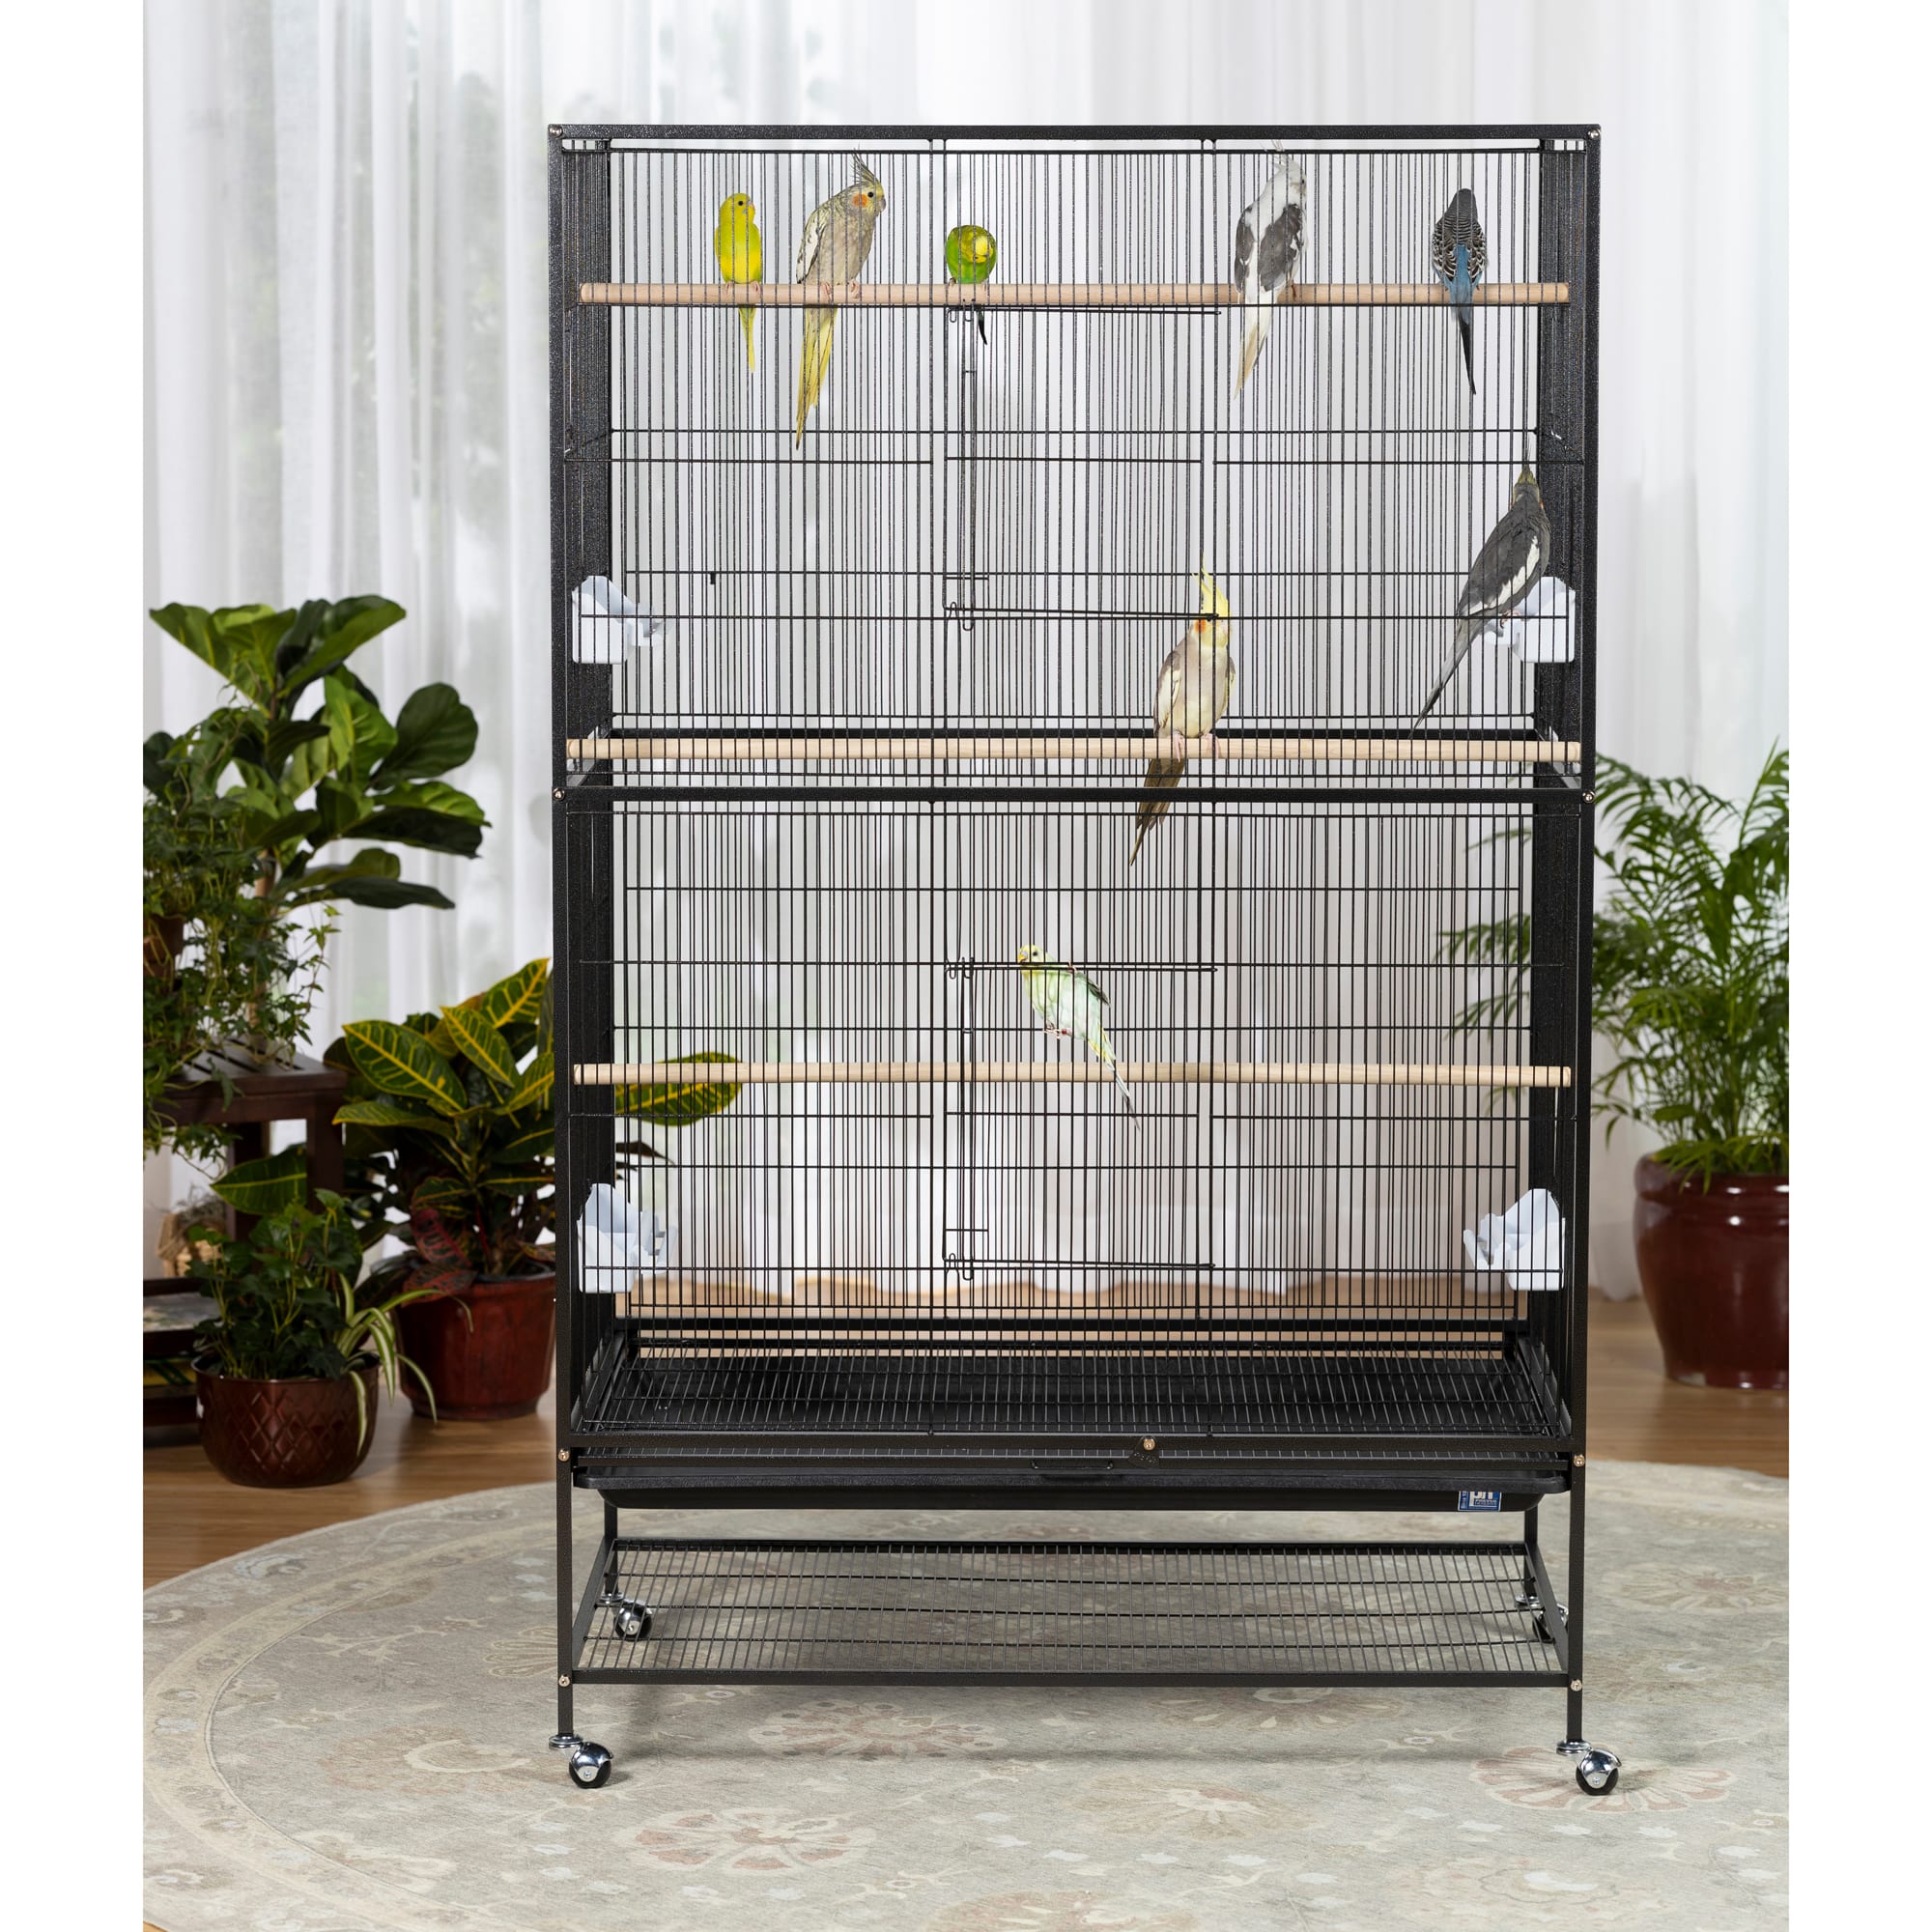 prevue hendryx bird cage